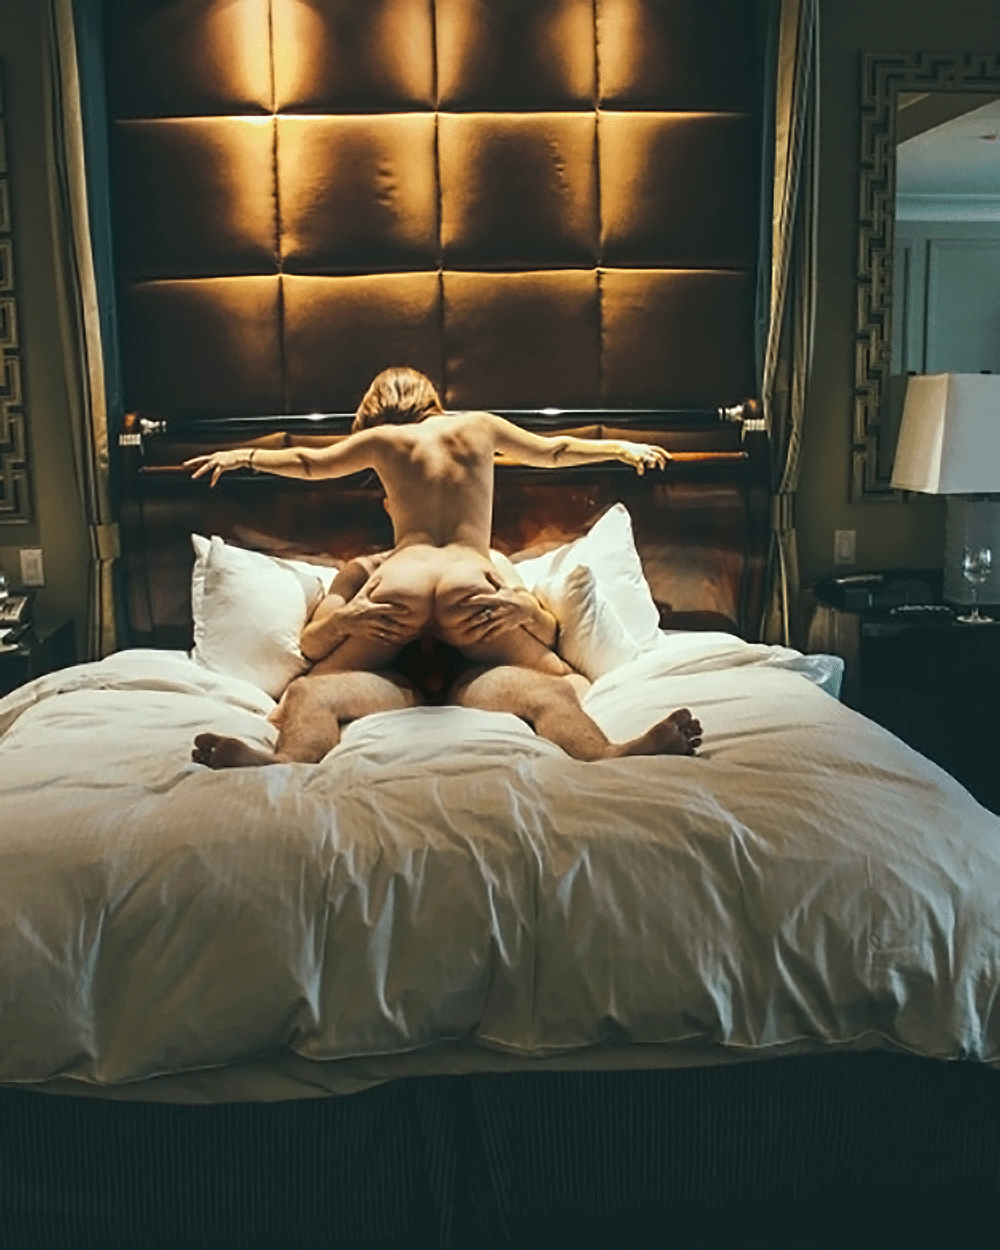 Sex hotel room